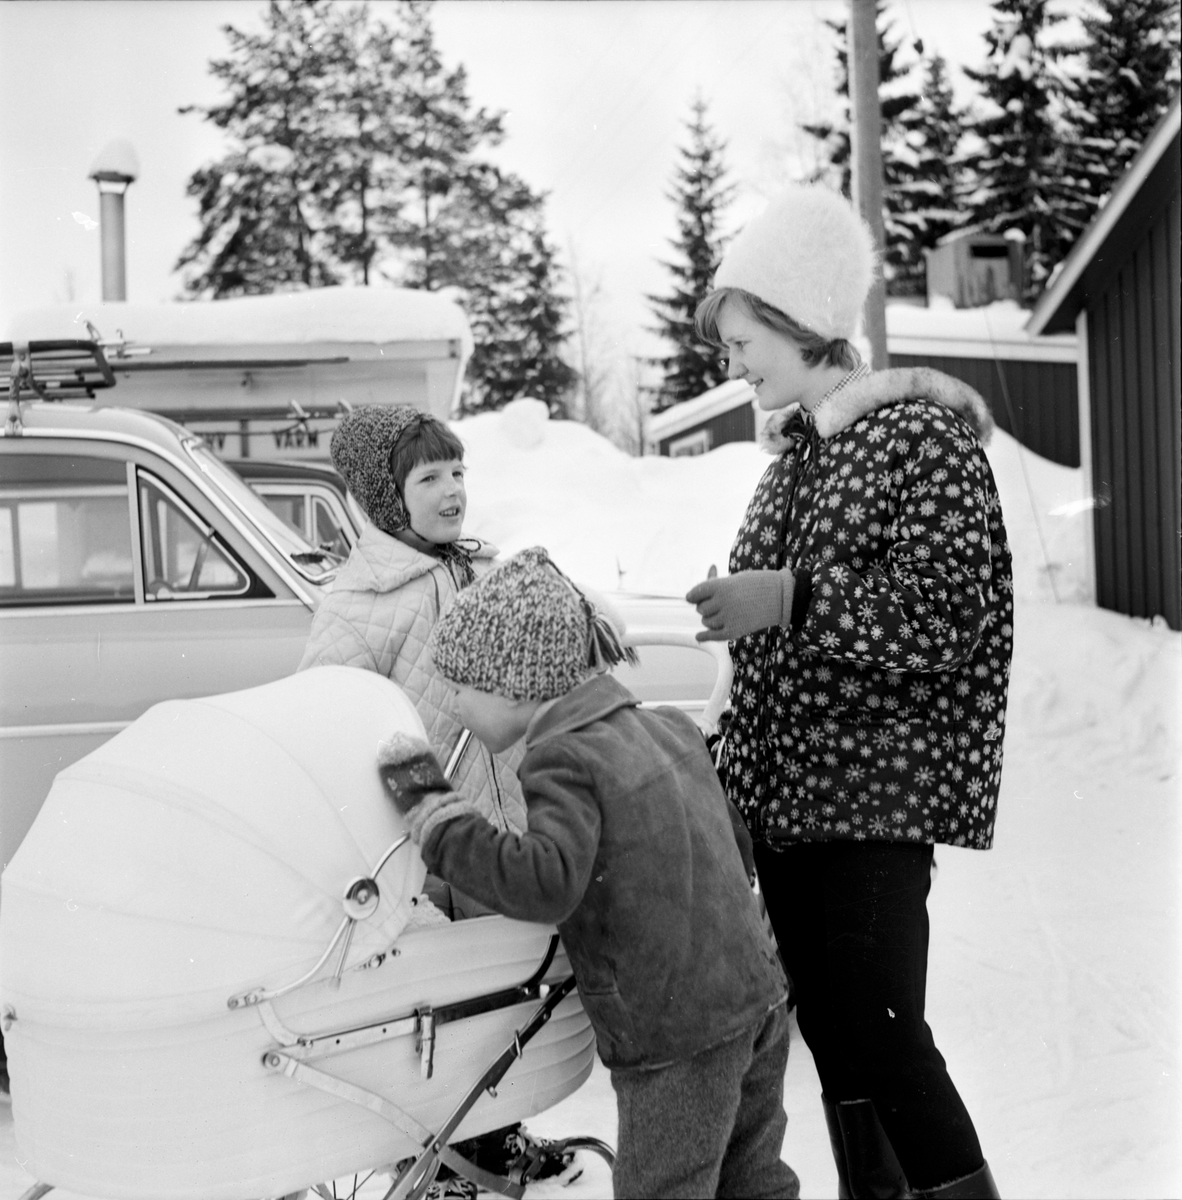 Hällbo. Skoltävling på skidor, 2 Mars 1966.
Flickan i ljus jacka är Åsa Andersson.